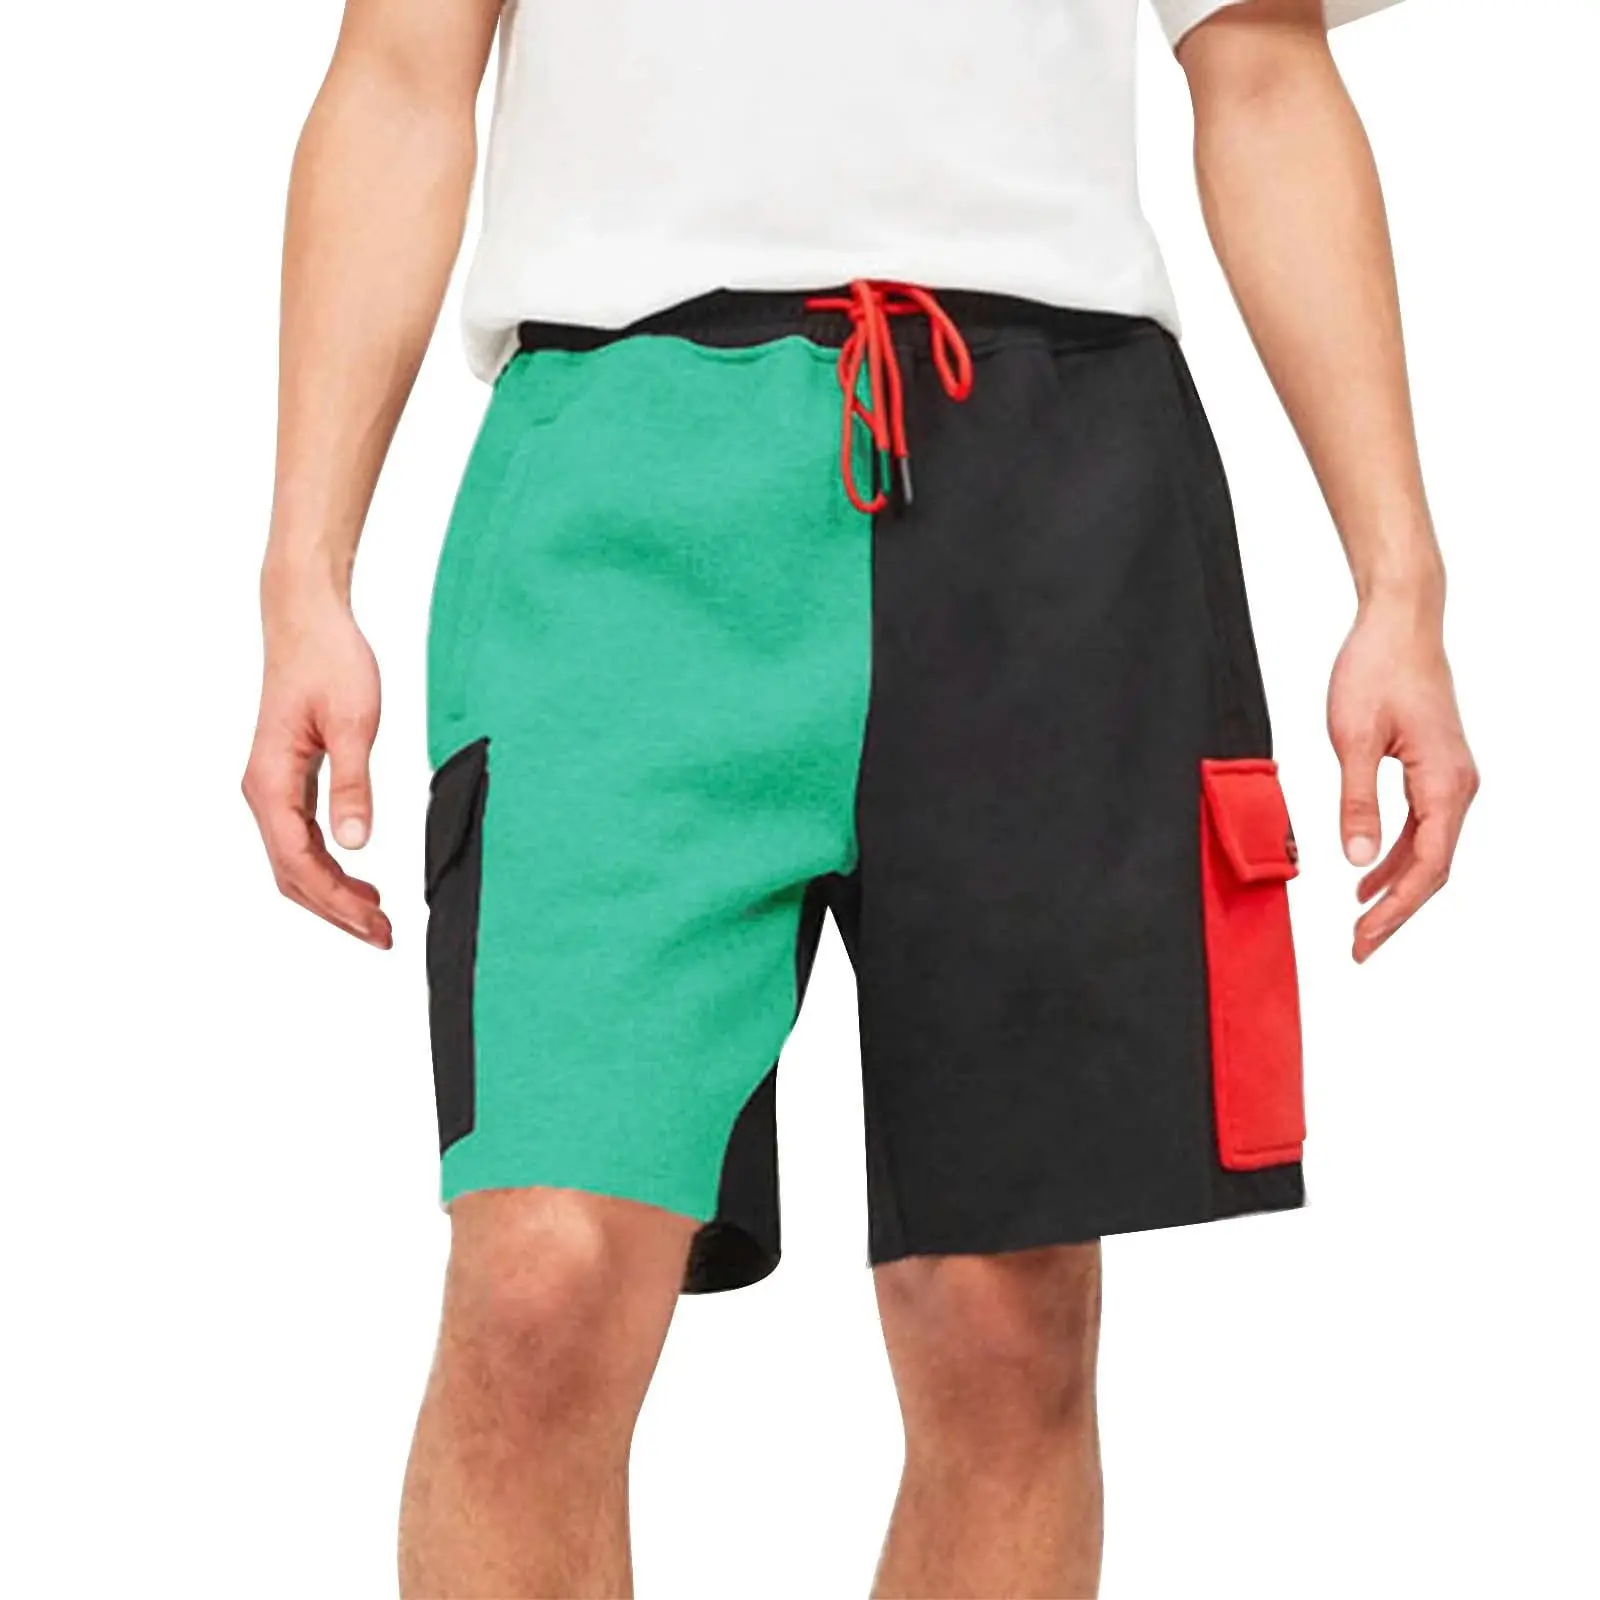 पुरुष खिंचाव शॉर्ट्स कैजुअल पहनते हैं हाई स्ट्रीट फ्रंट स्लिम फिट आधा पैंट